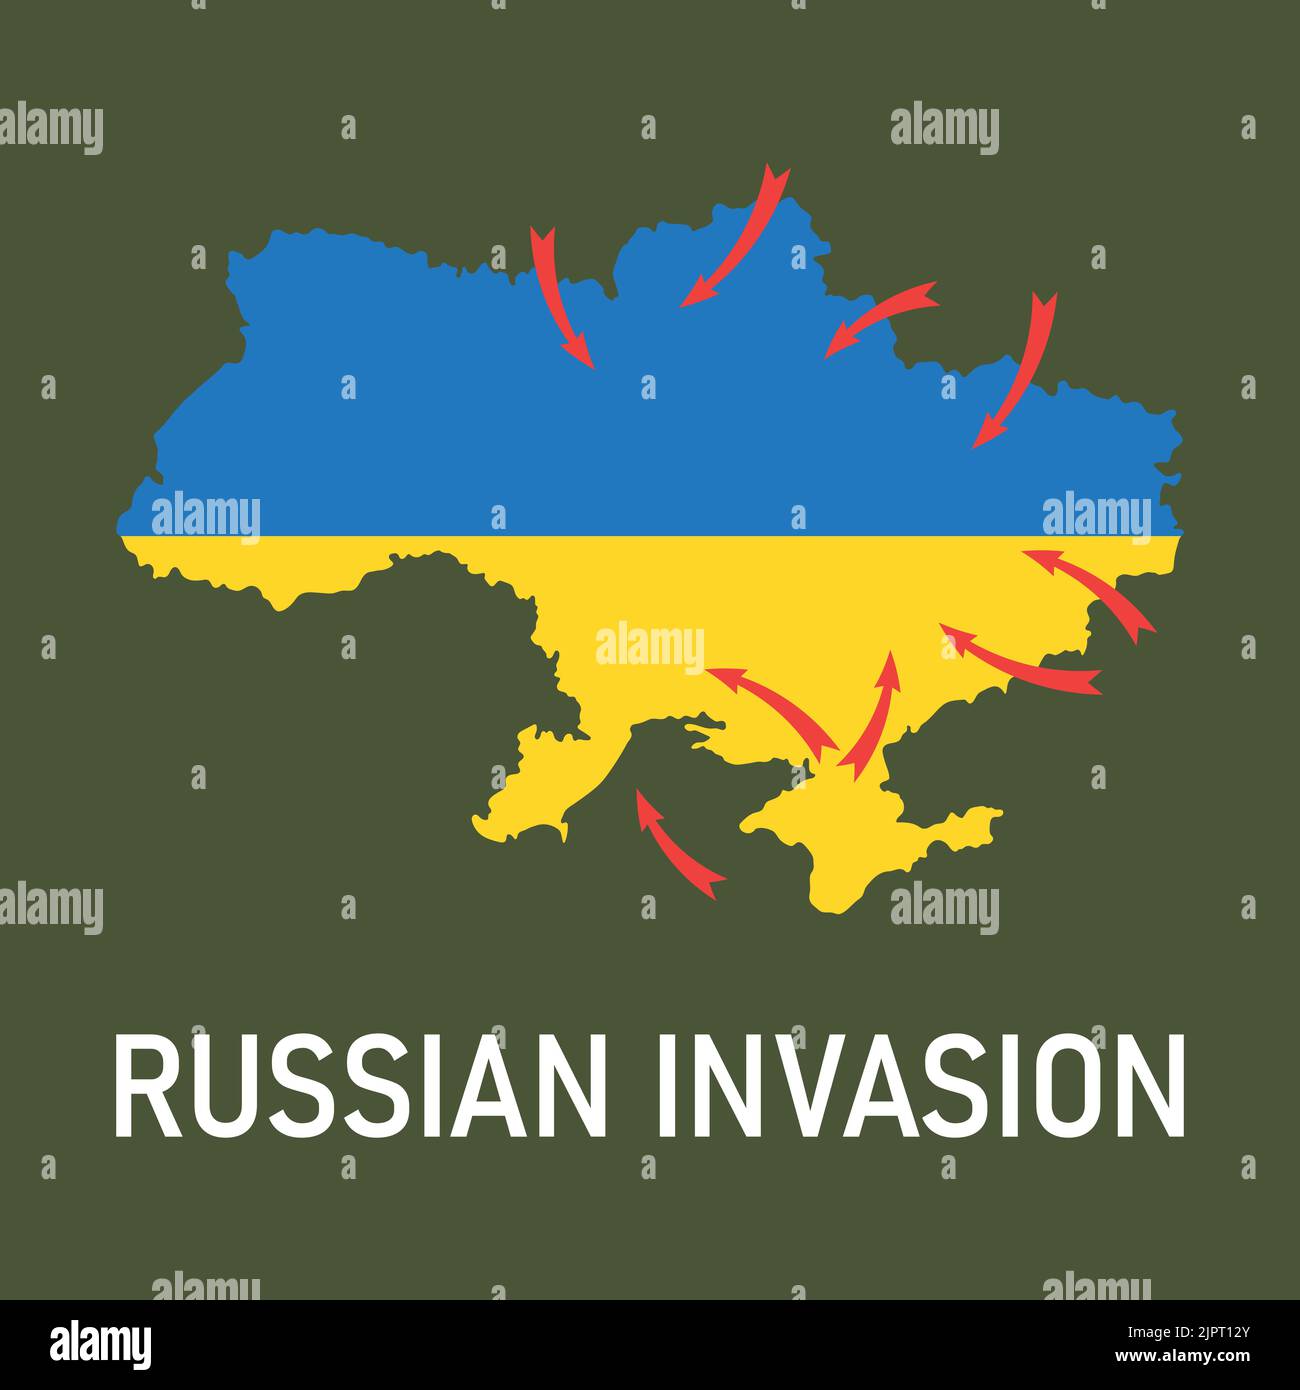 2022 invasion russe de l'Ukraine. Carte de l'Ukraine dans les couleurs bleu et jaune du drapeau ukrainien, flèches rouges des attaques russes de différentes directions Illustration de Vecteur